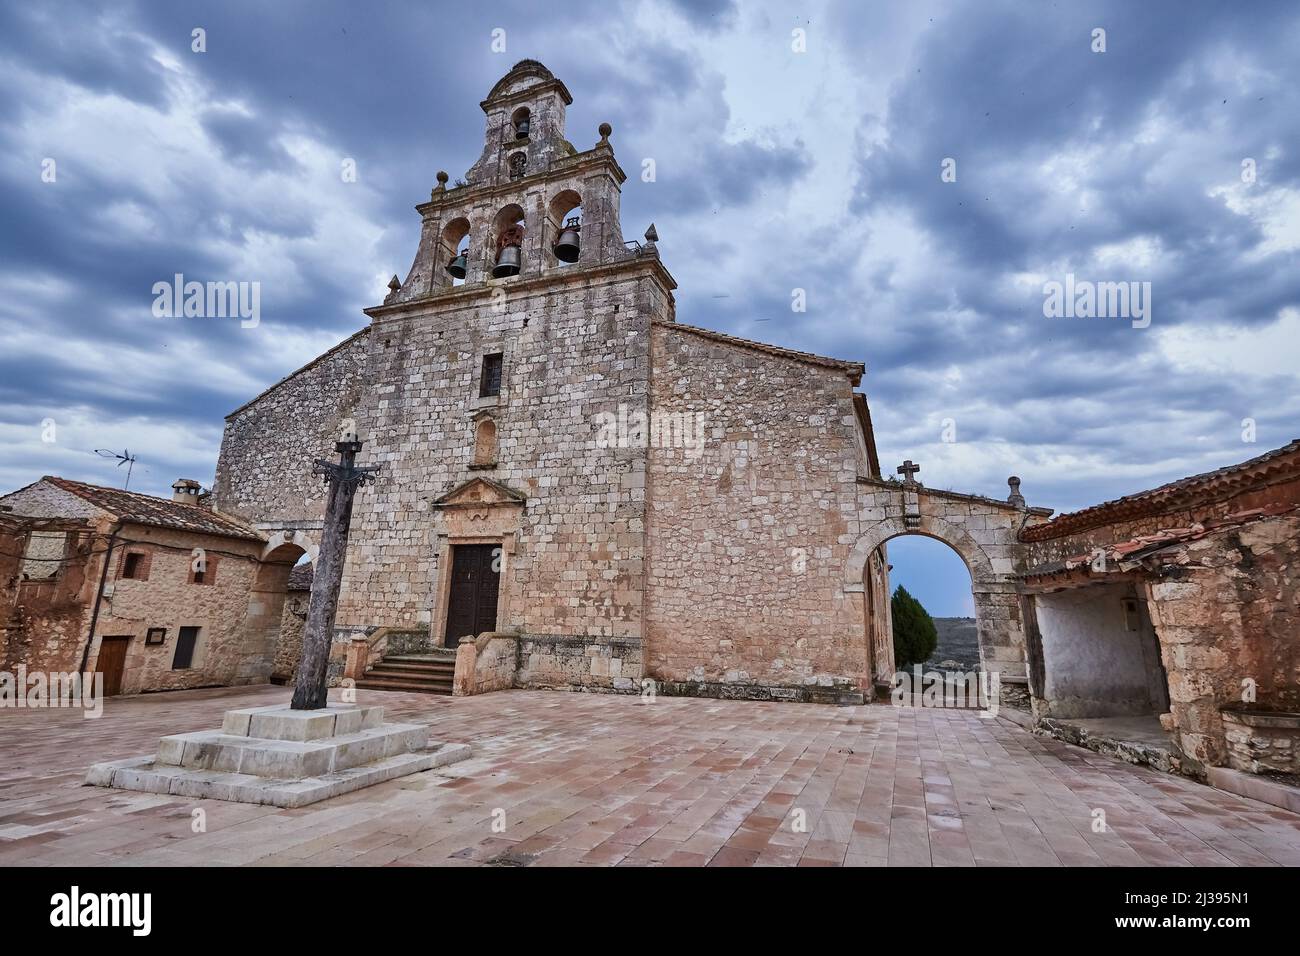 Maderuelo ist ein schönes und mittelalterliches Dorf in der Provinz Segovia, Spanien Stockfoto